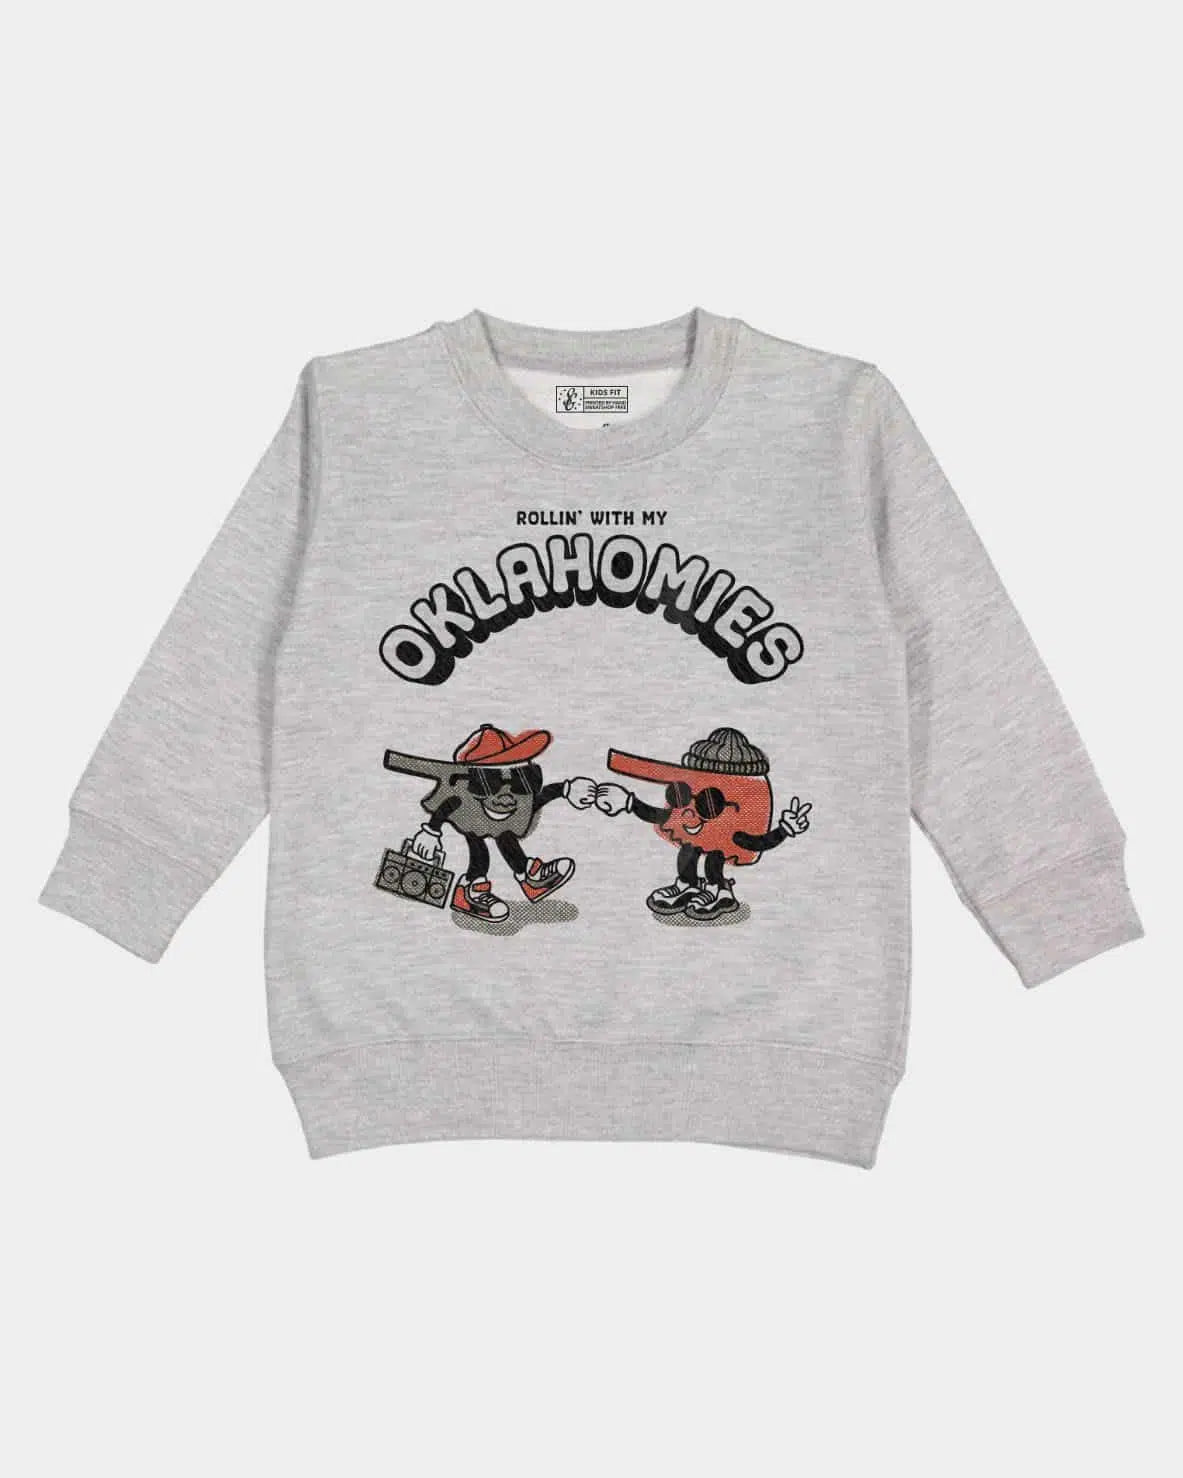 Oklahomies Kids Pullover Sweatshirt - Heather Grey